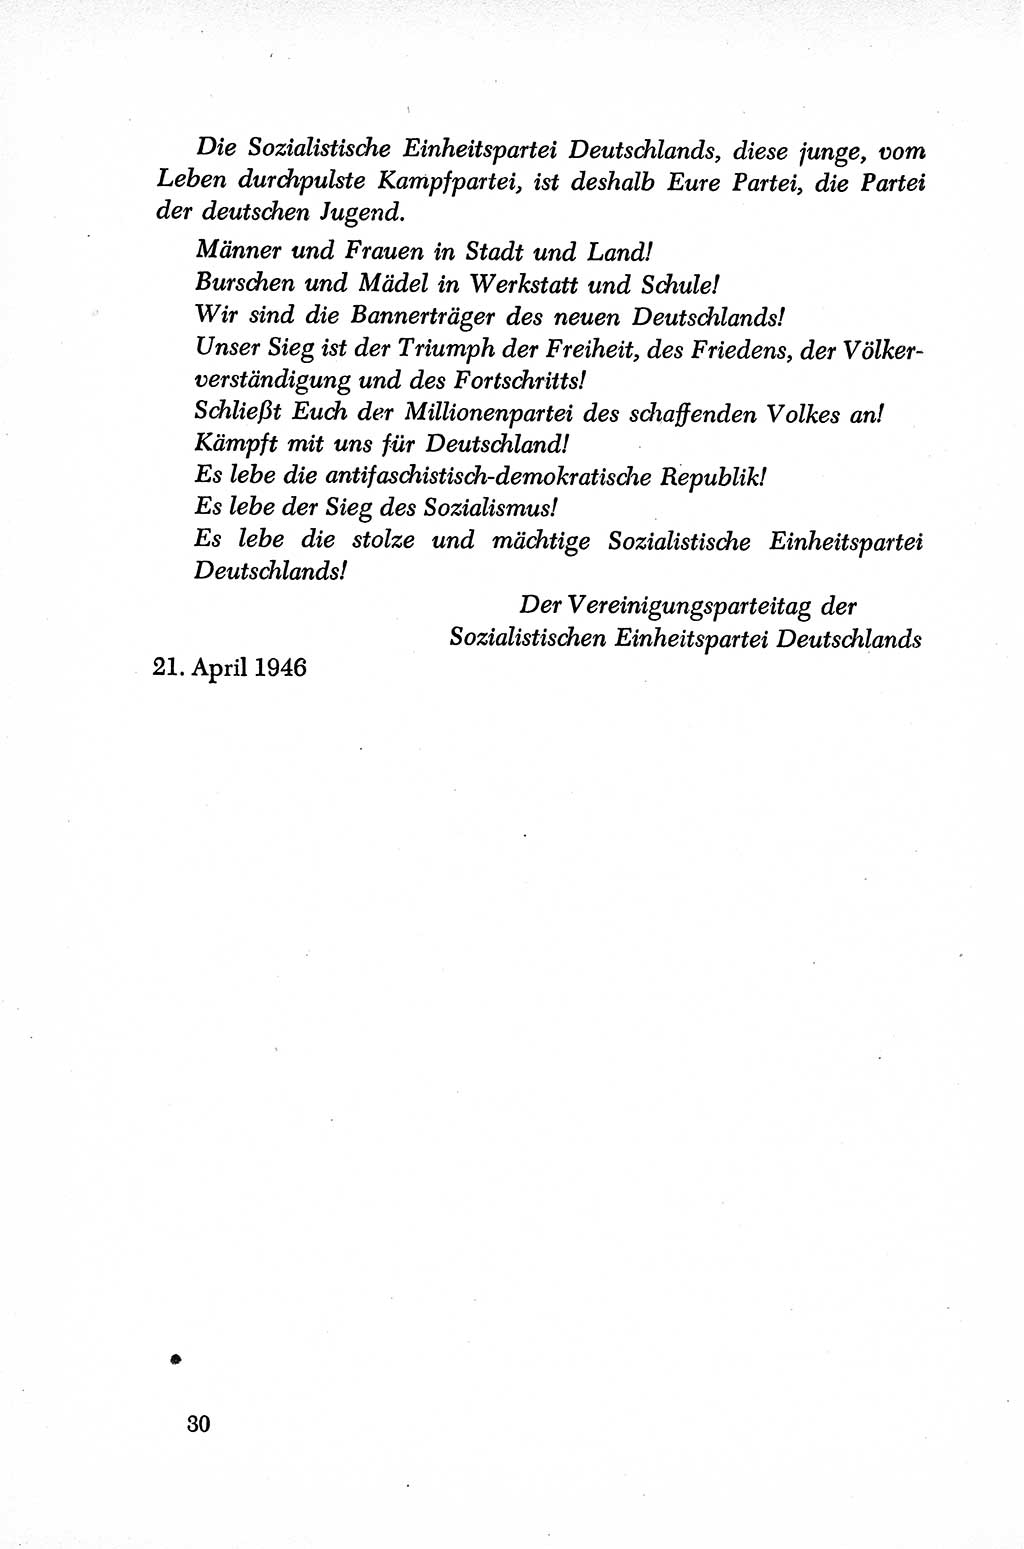 Dokumente der Sozialistischen Einheitspartei Deutschlands (SED) [Sowjetische Besatzungszone (SBZ) Deutschlands] 1946-1948, Seite 30 (Dok. SED SBZ Dtl. 1946-1948, S. 30)